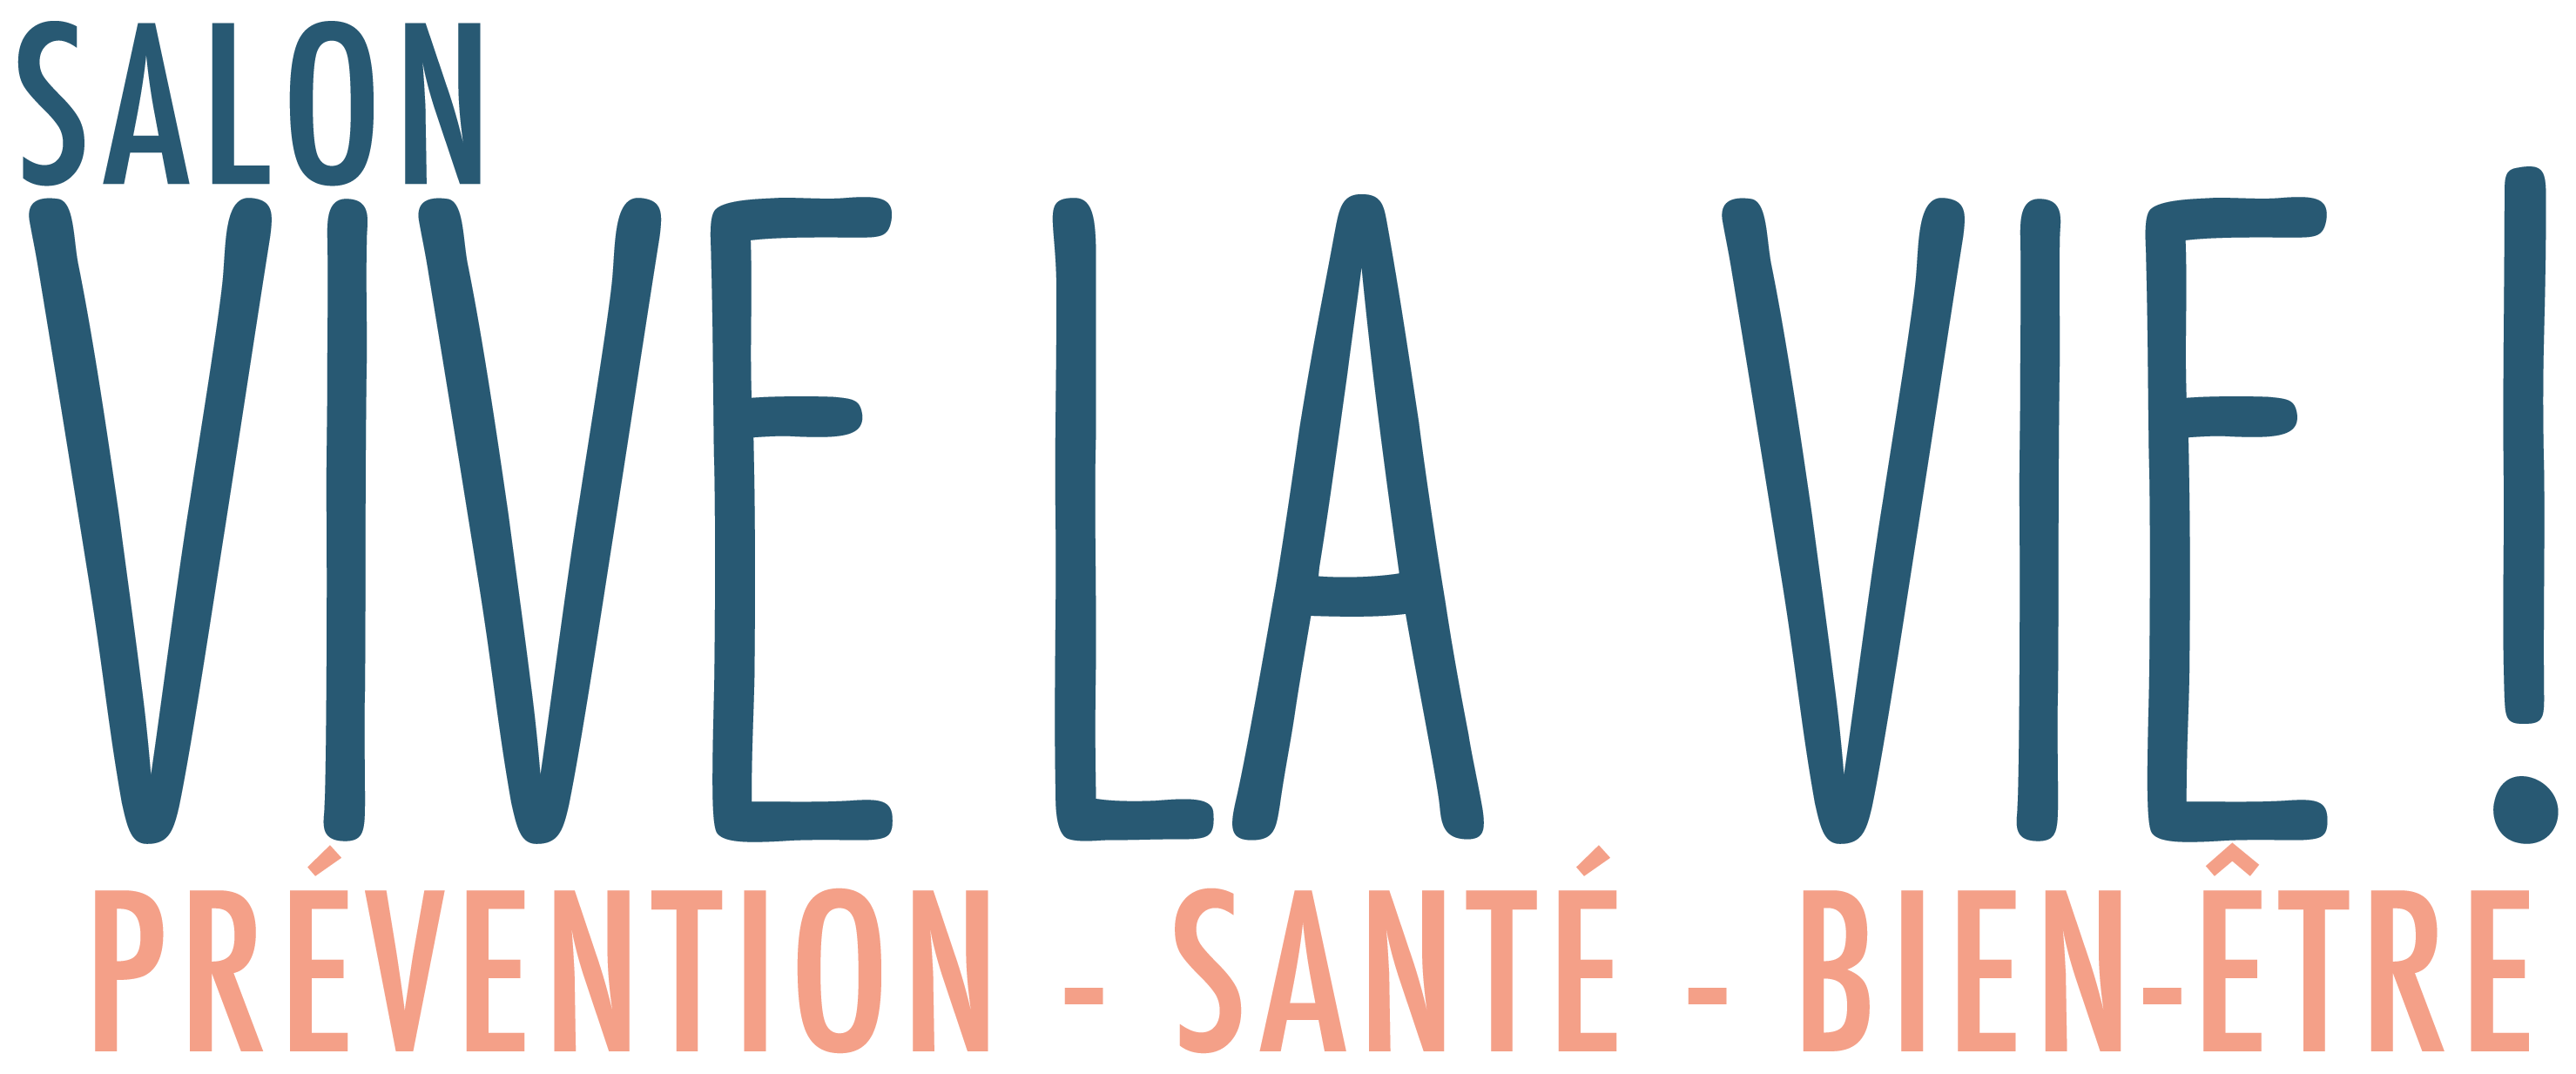 Salon Vive la Vie Logo